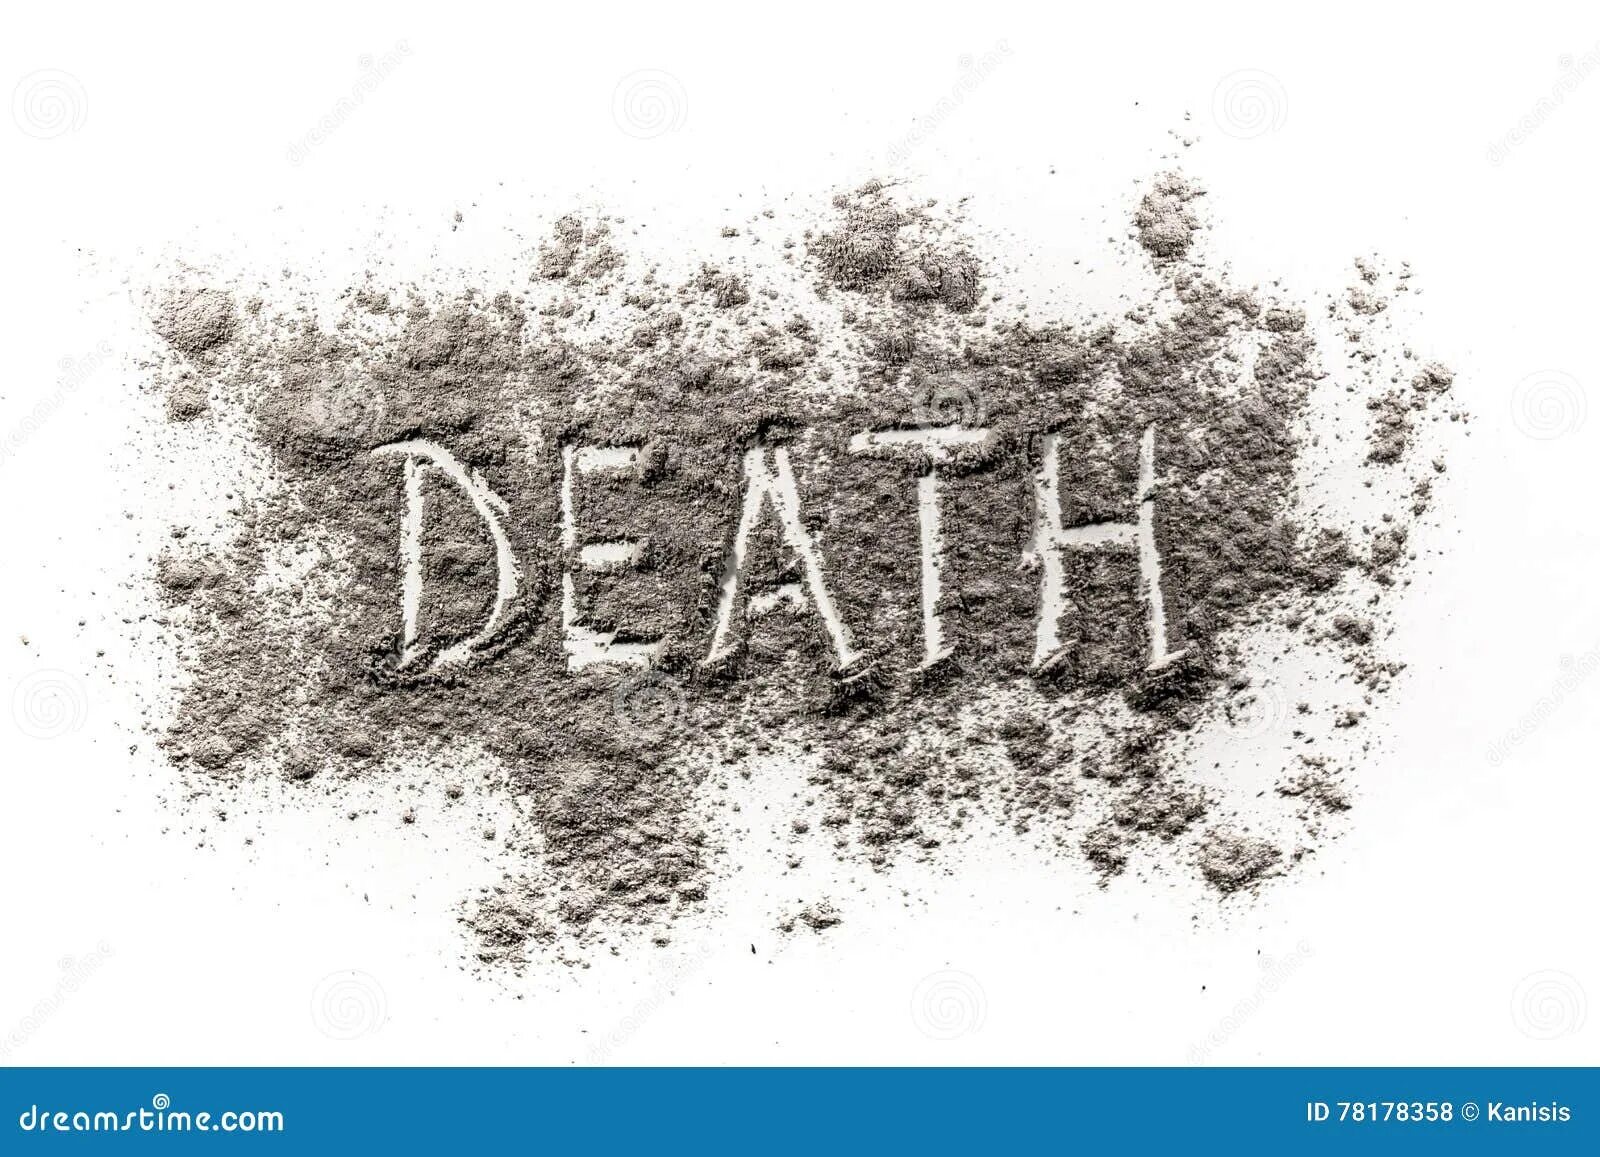 Картинка со словам смерть